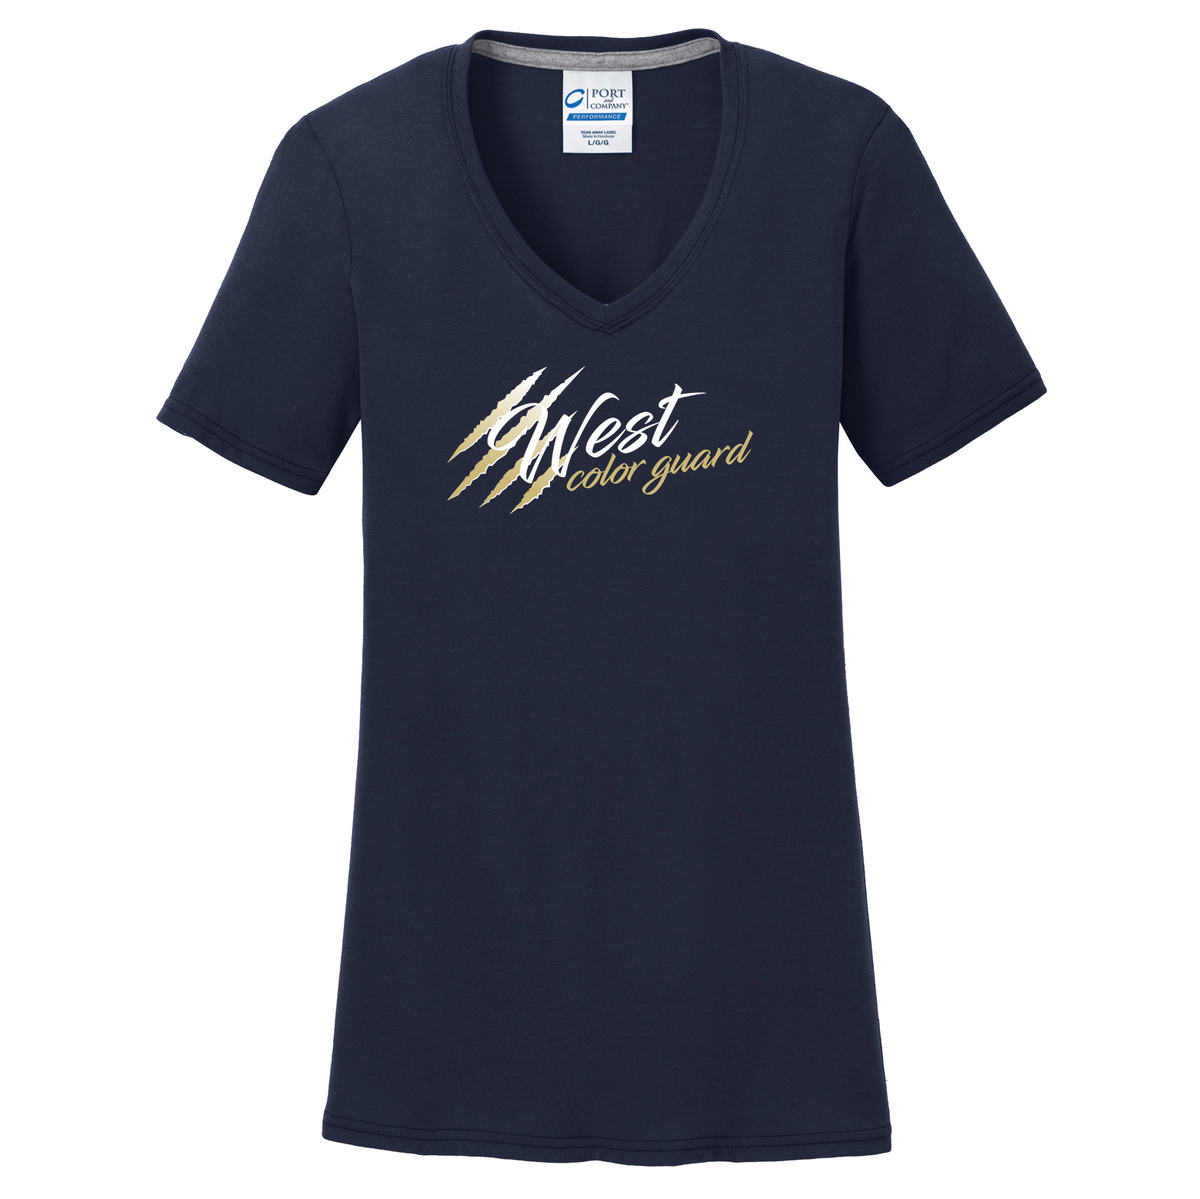 West Forsyth Color Guard Women's T-Shirt